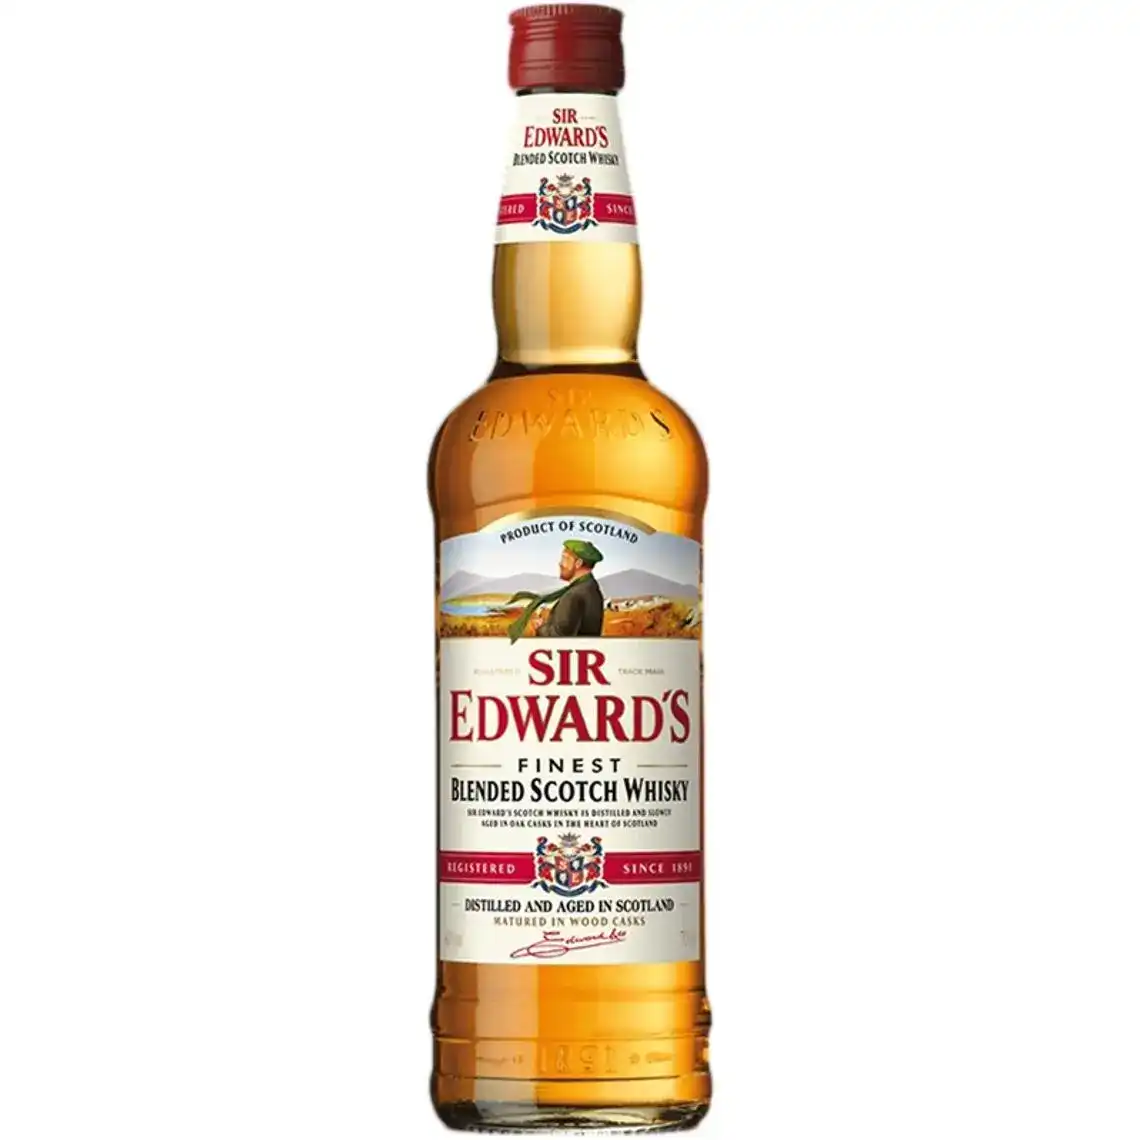 Виски Sir Edward's Bardinet купажированный 3 года выдержки 40% 0.7 л